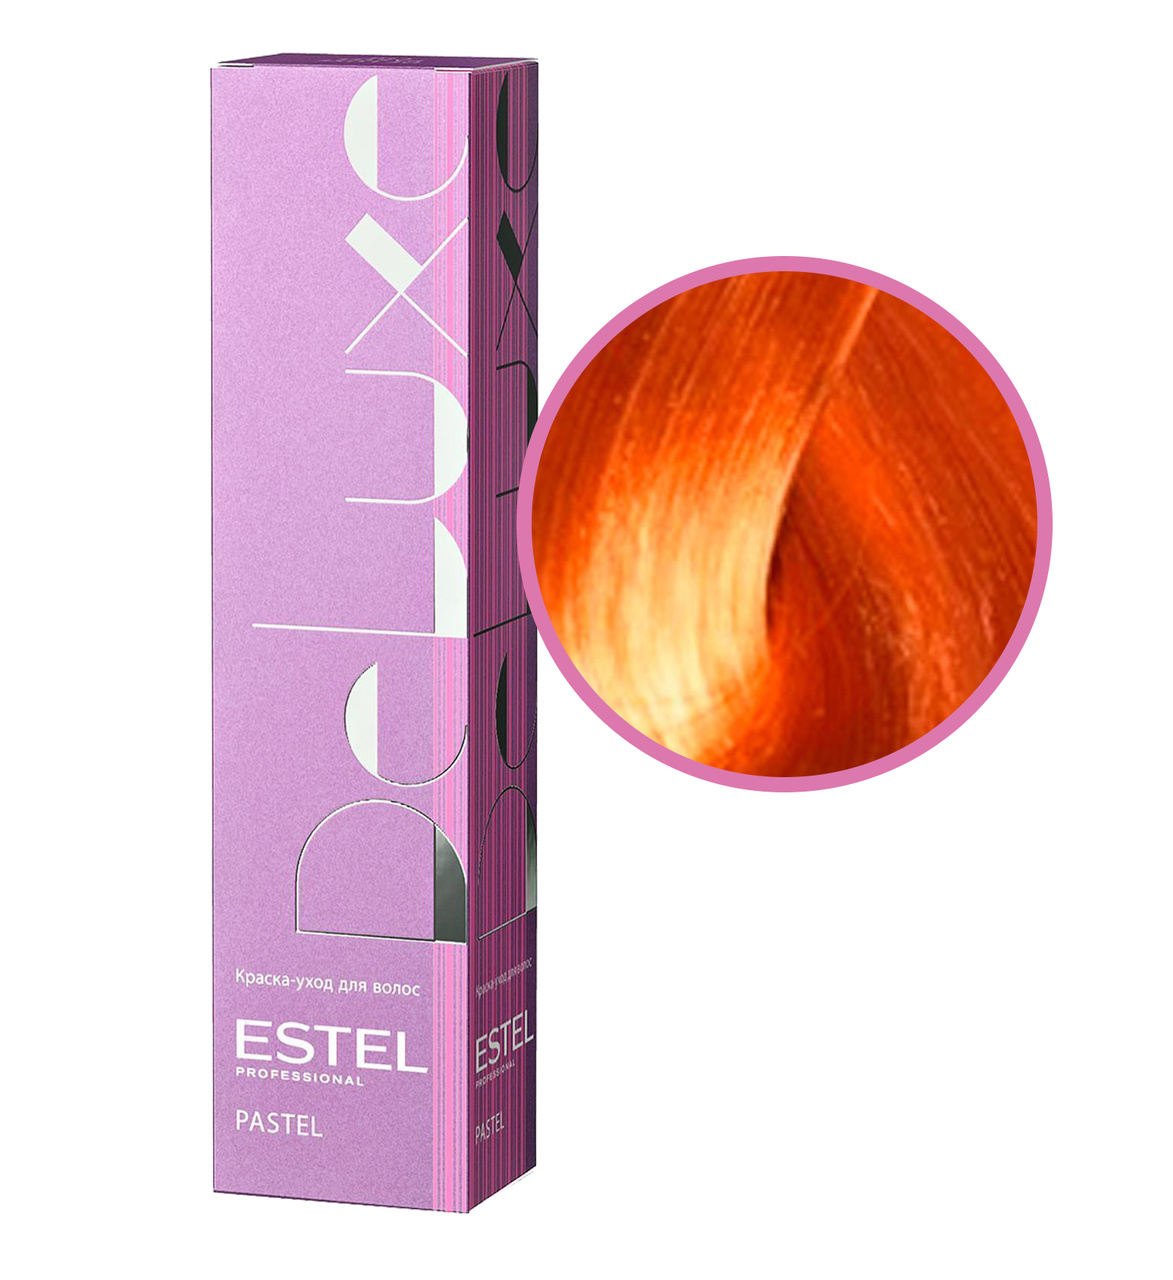 Эстель краска розовая. Estel professional краска для волос de Luxe Pastel p/004 персик. Краска для волос Estel Deluxe Pastel персик. Estel Deluxe Pastel краска. Estel Делюкс краска рыжая.